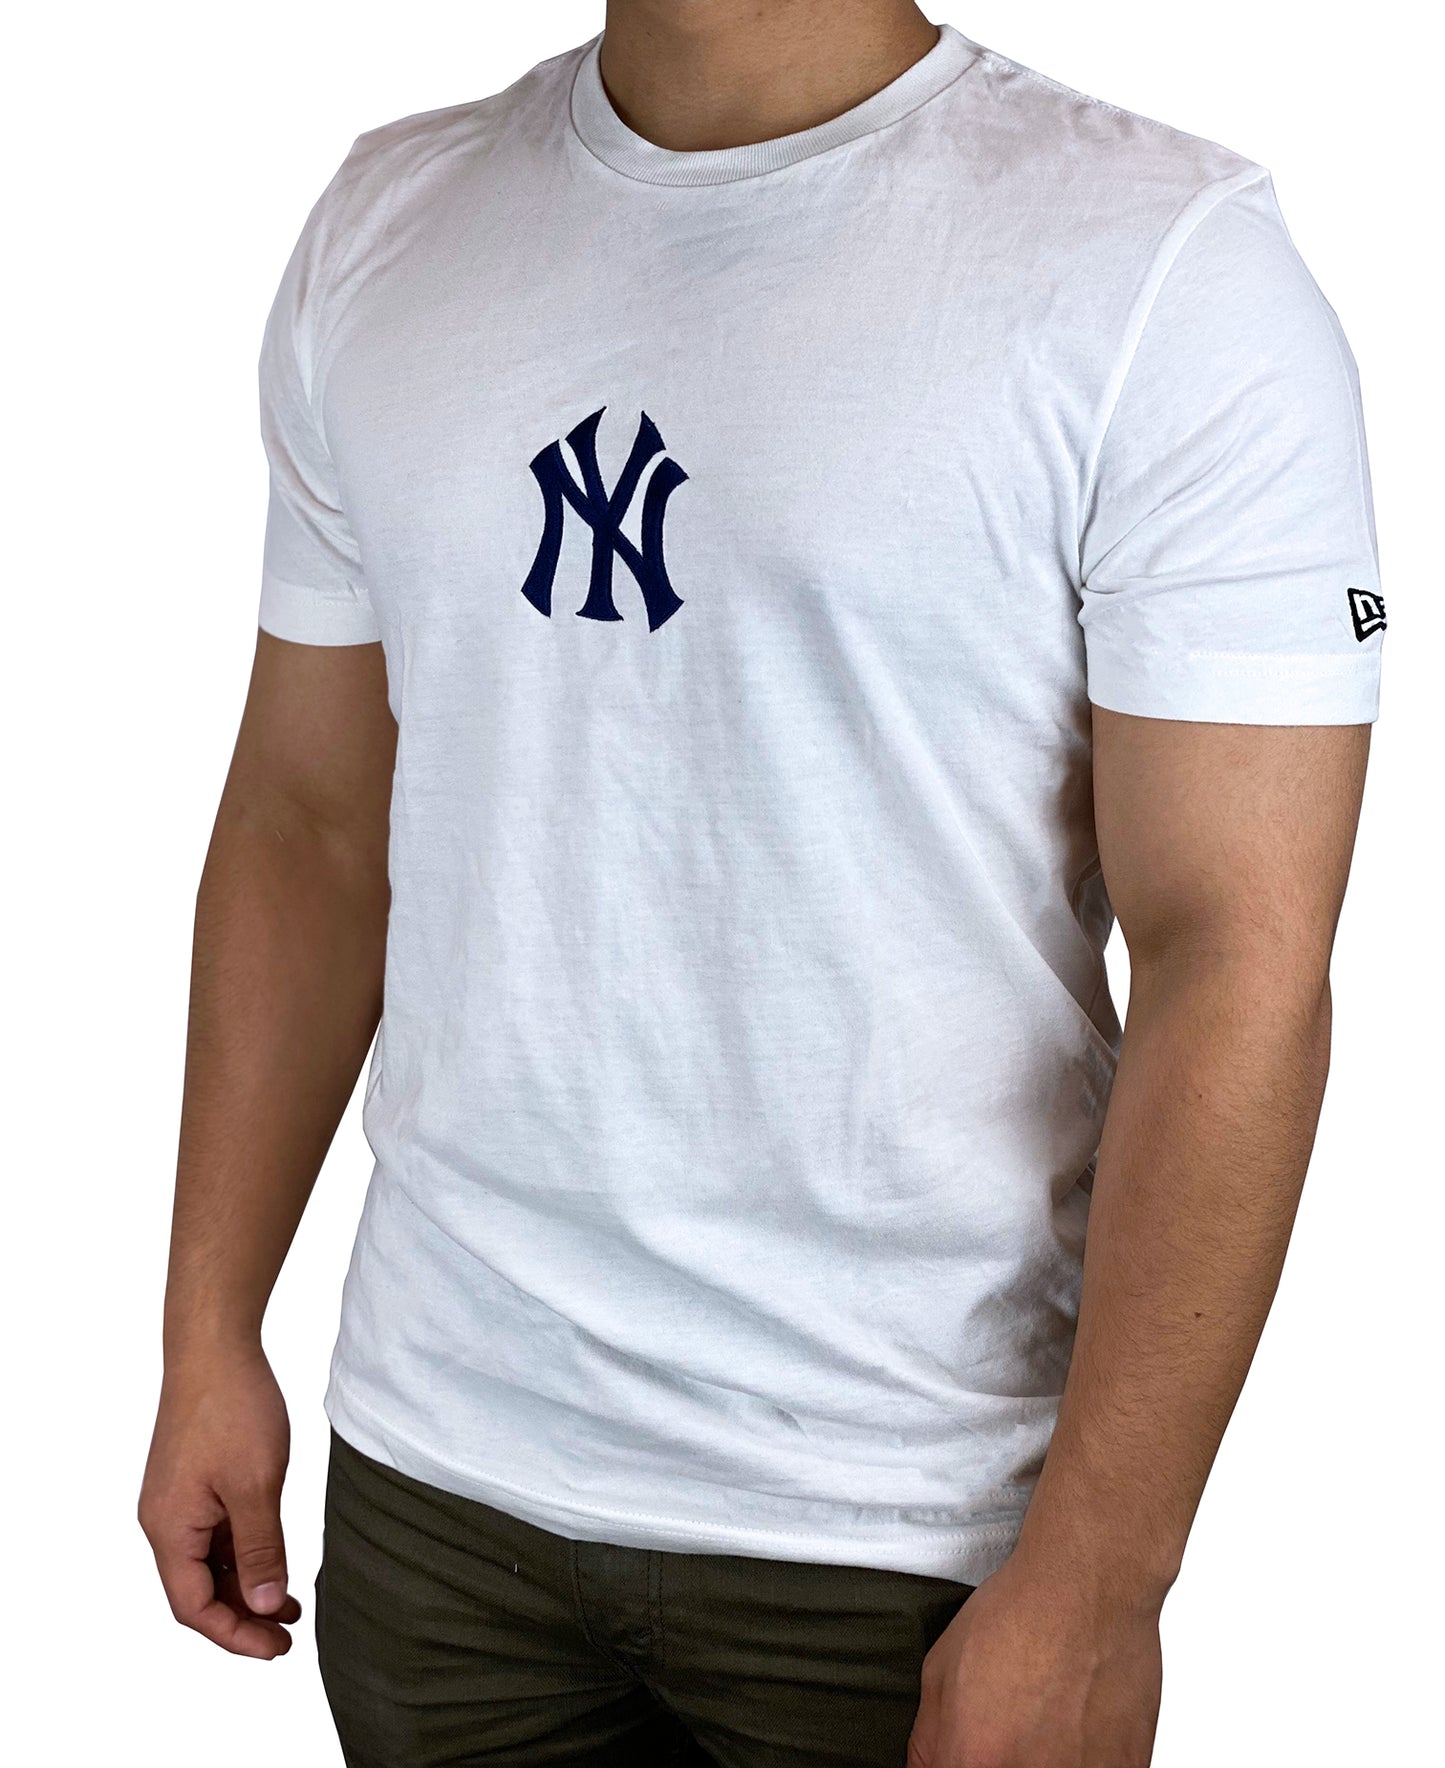 Official Men's New York Yankees Gear, Mens Yankees Apparel, Guys